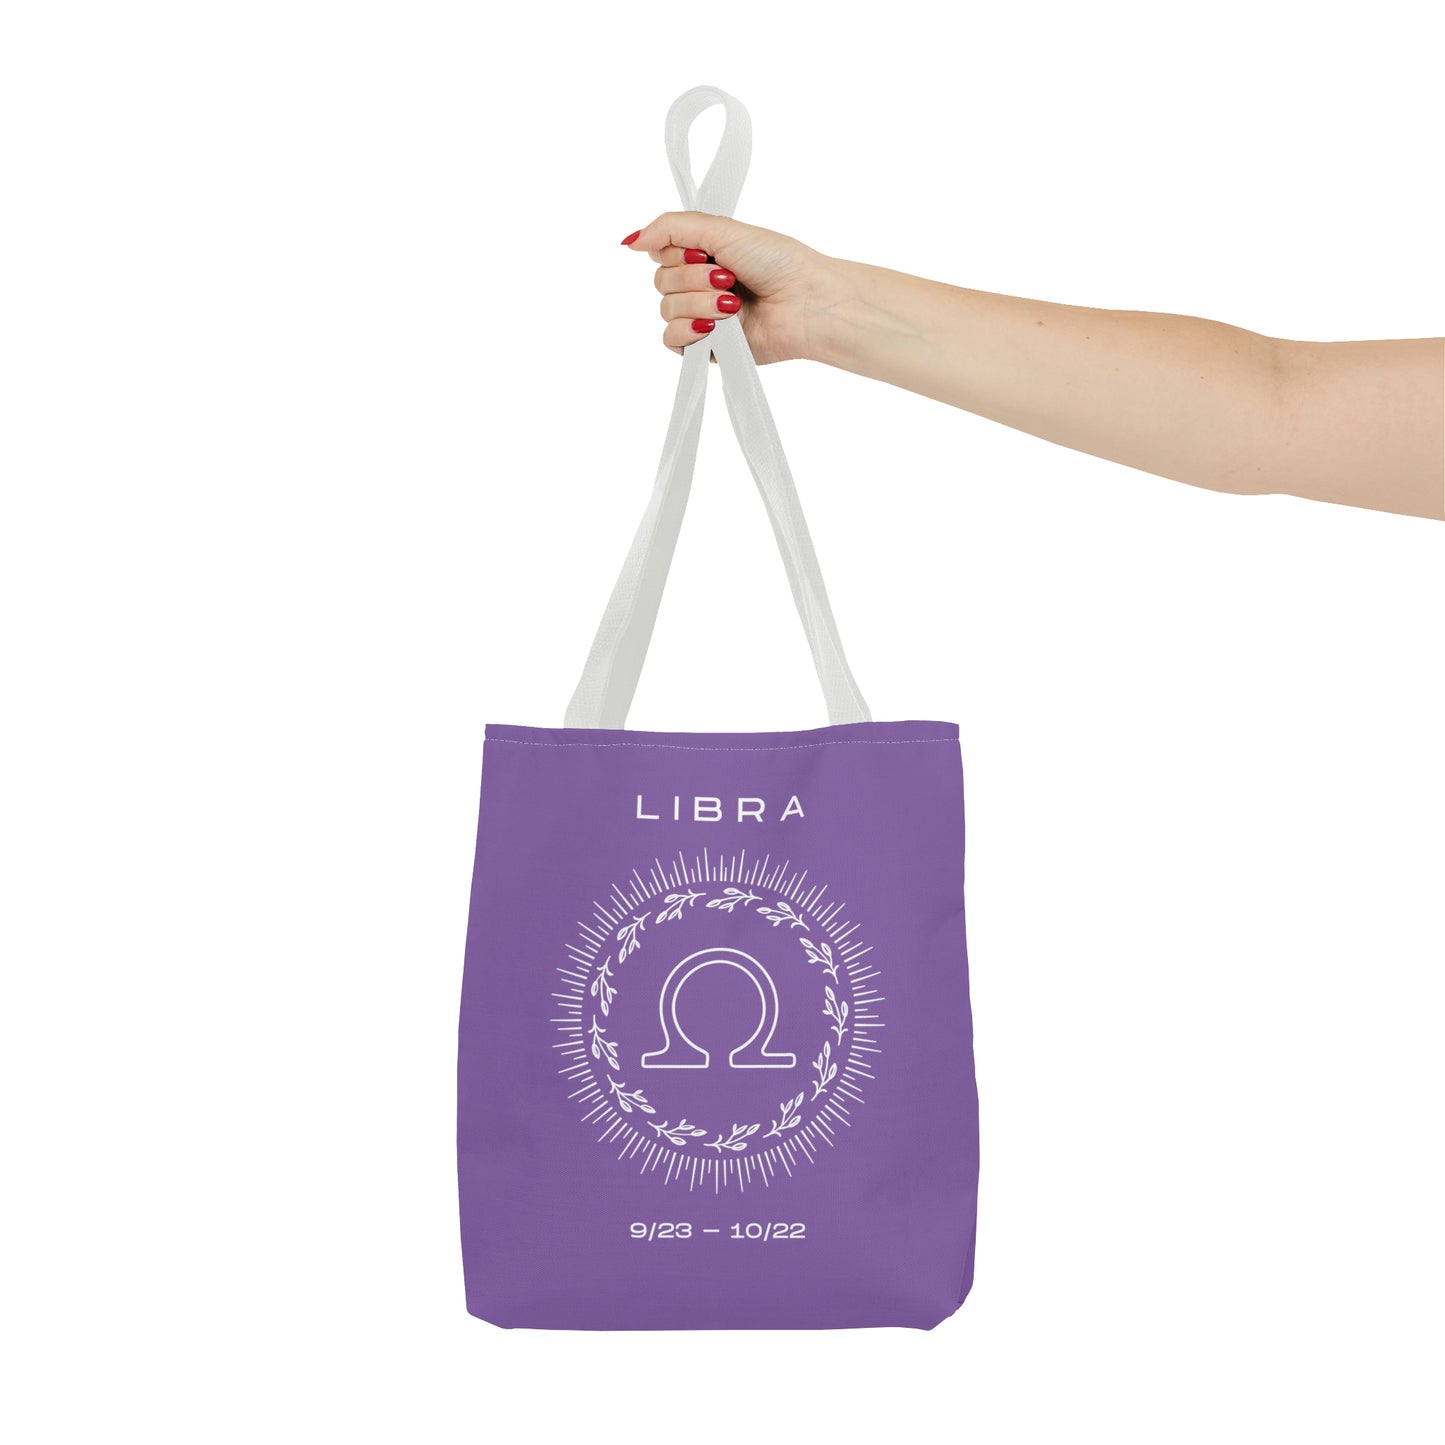 Libra Tote Bag, Purple